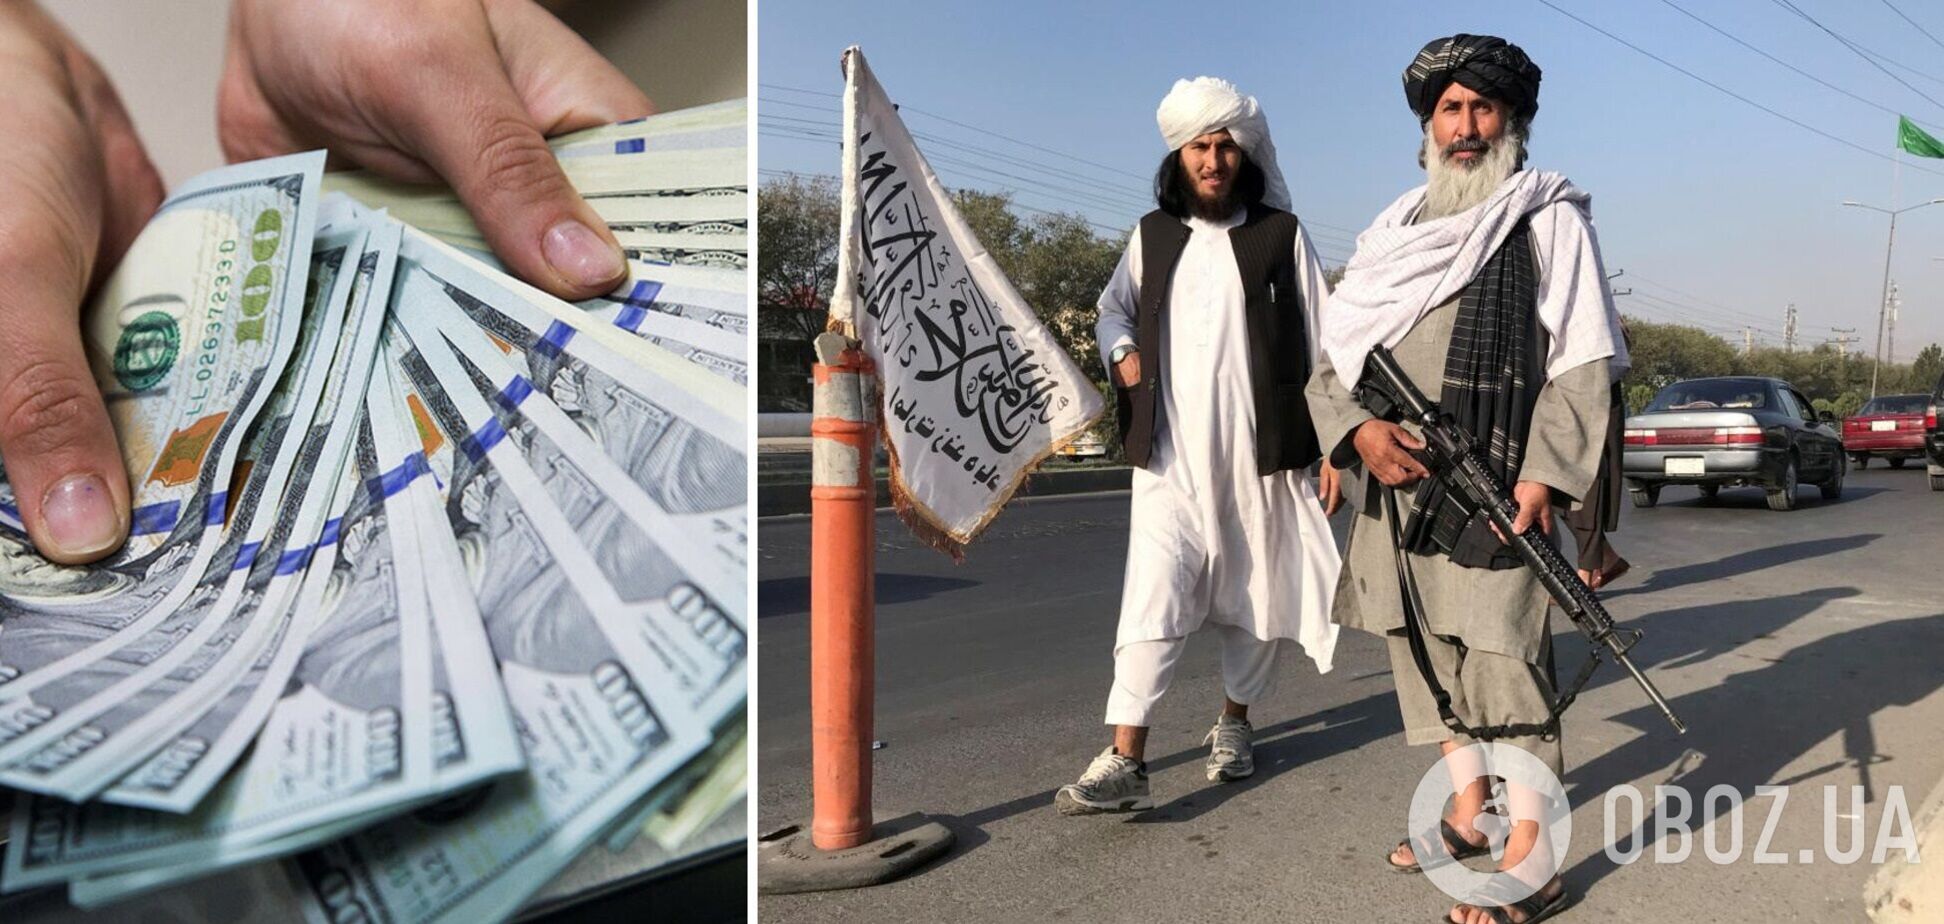 Талибан запретил использование иностранной валюты в Афганистане